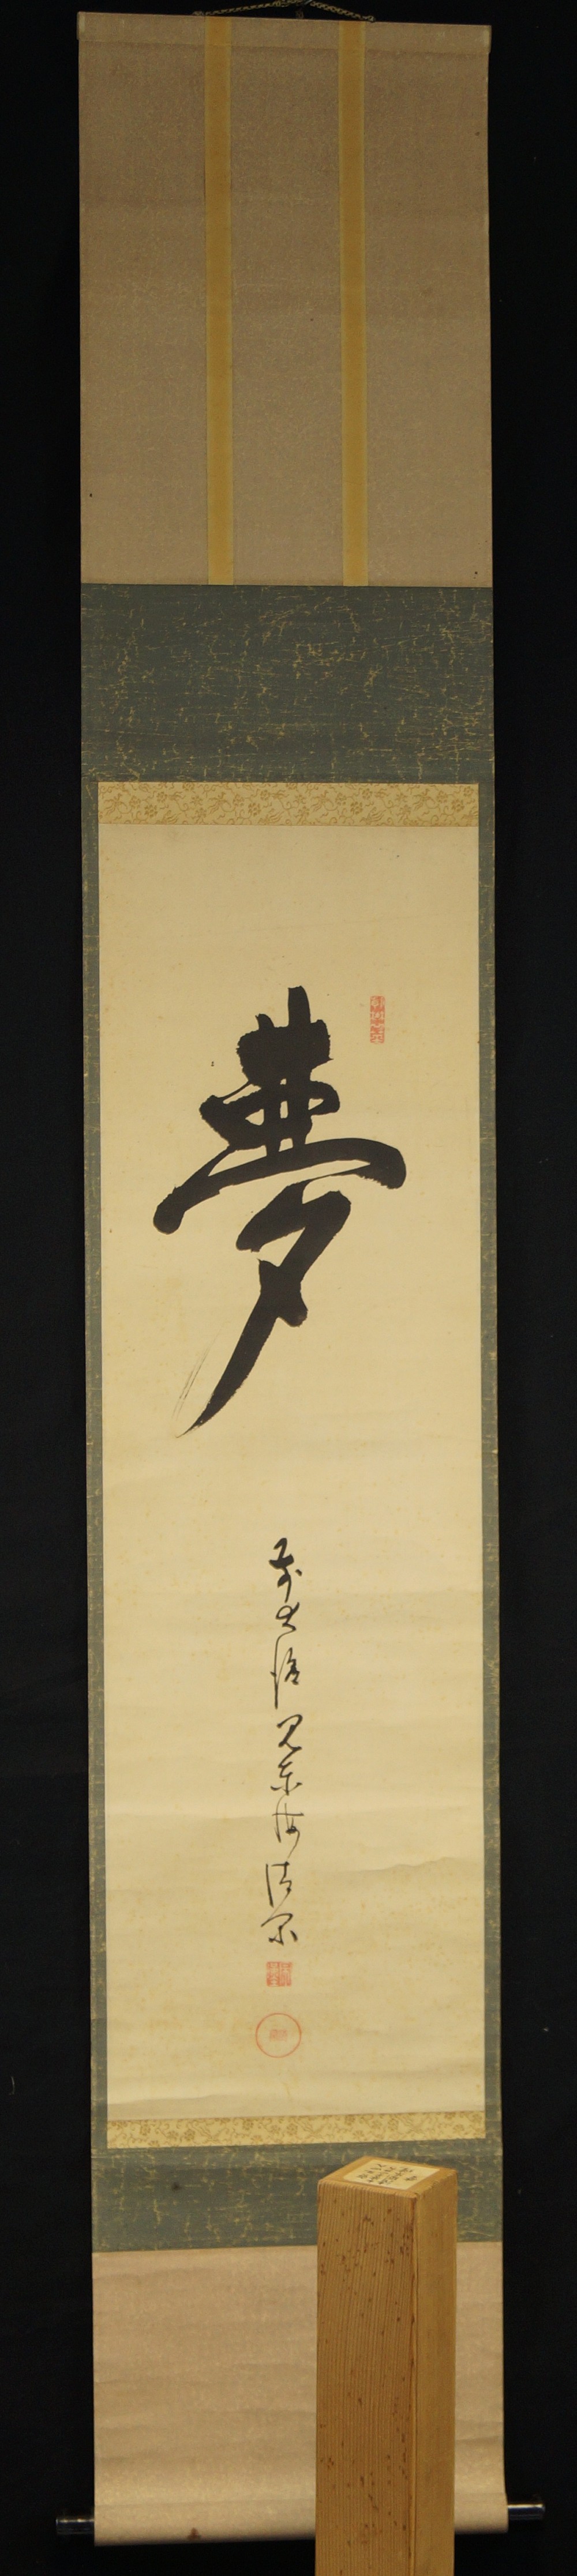 Kalligraphie "Traum" - Japanisches Rollbild (Kakejiku, Kakemono)